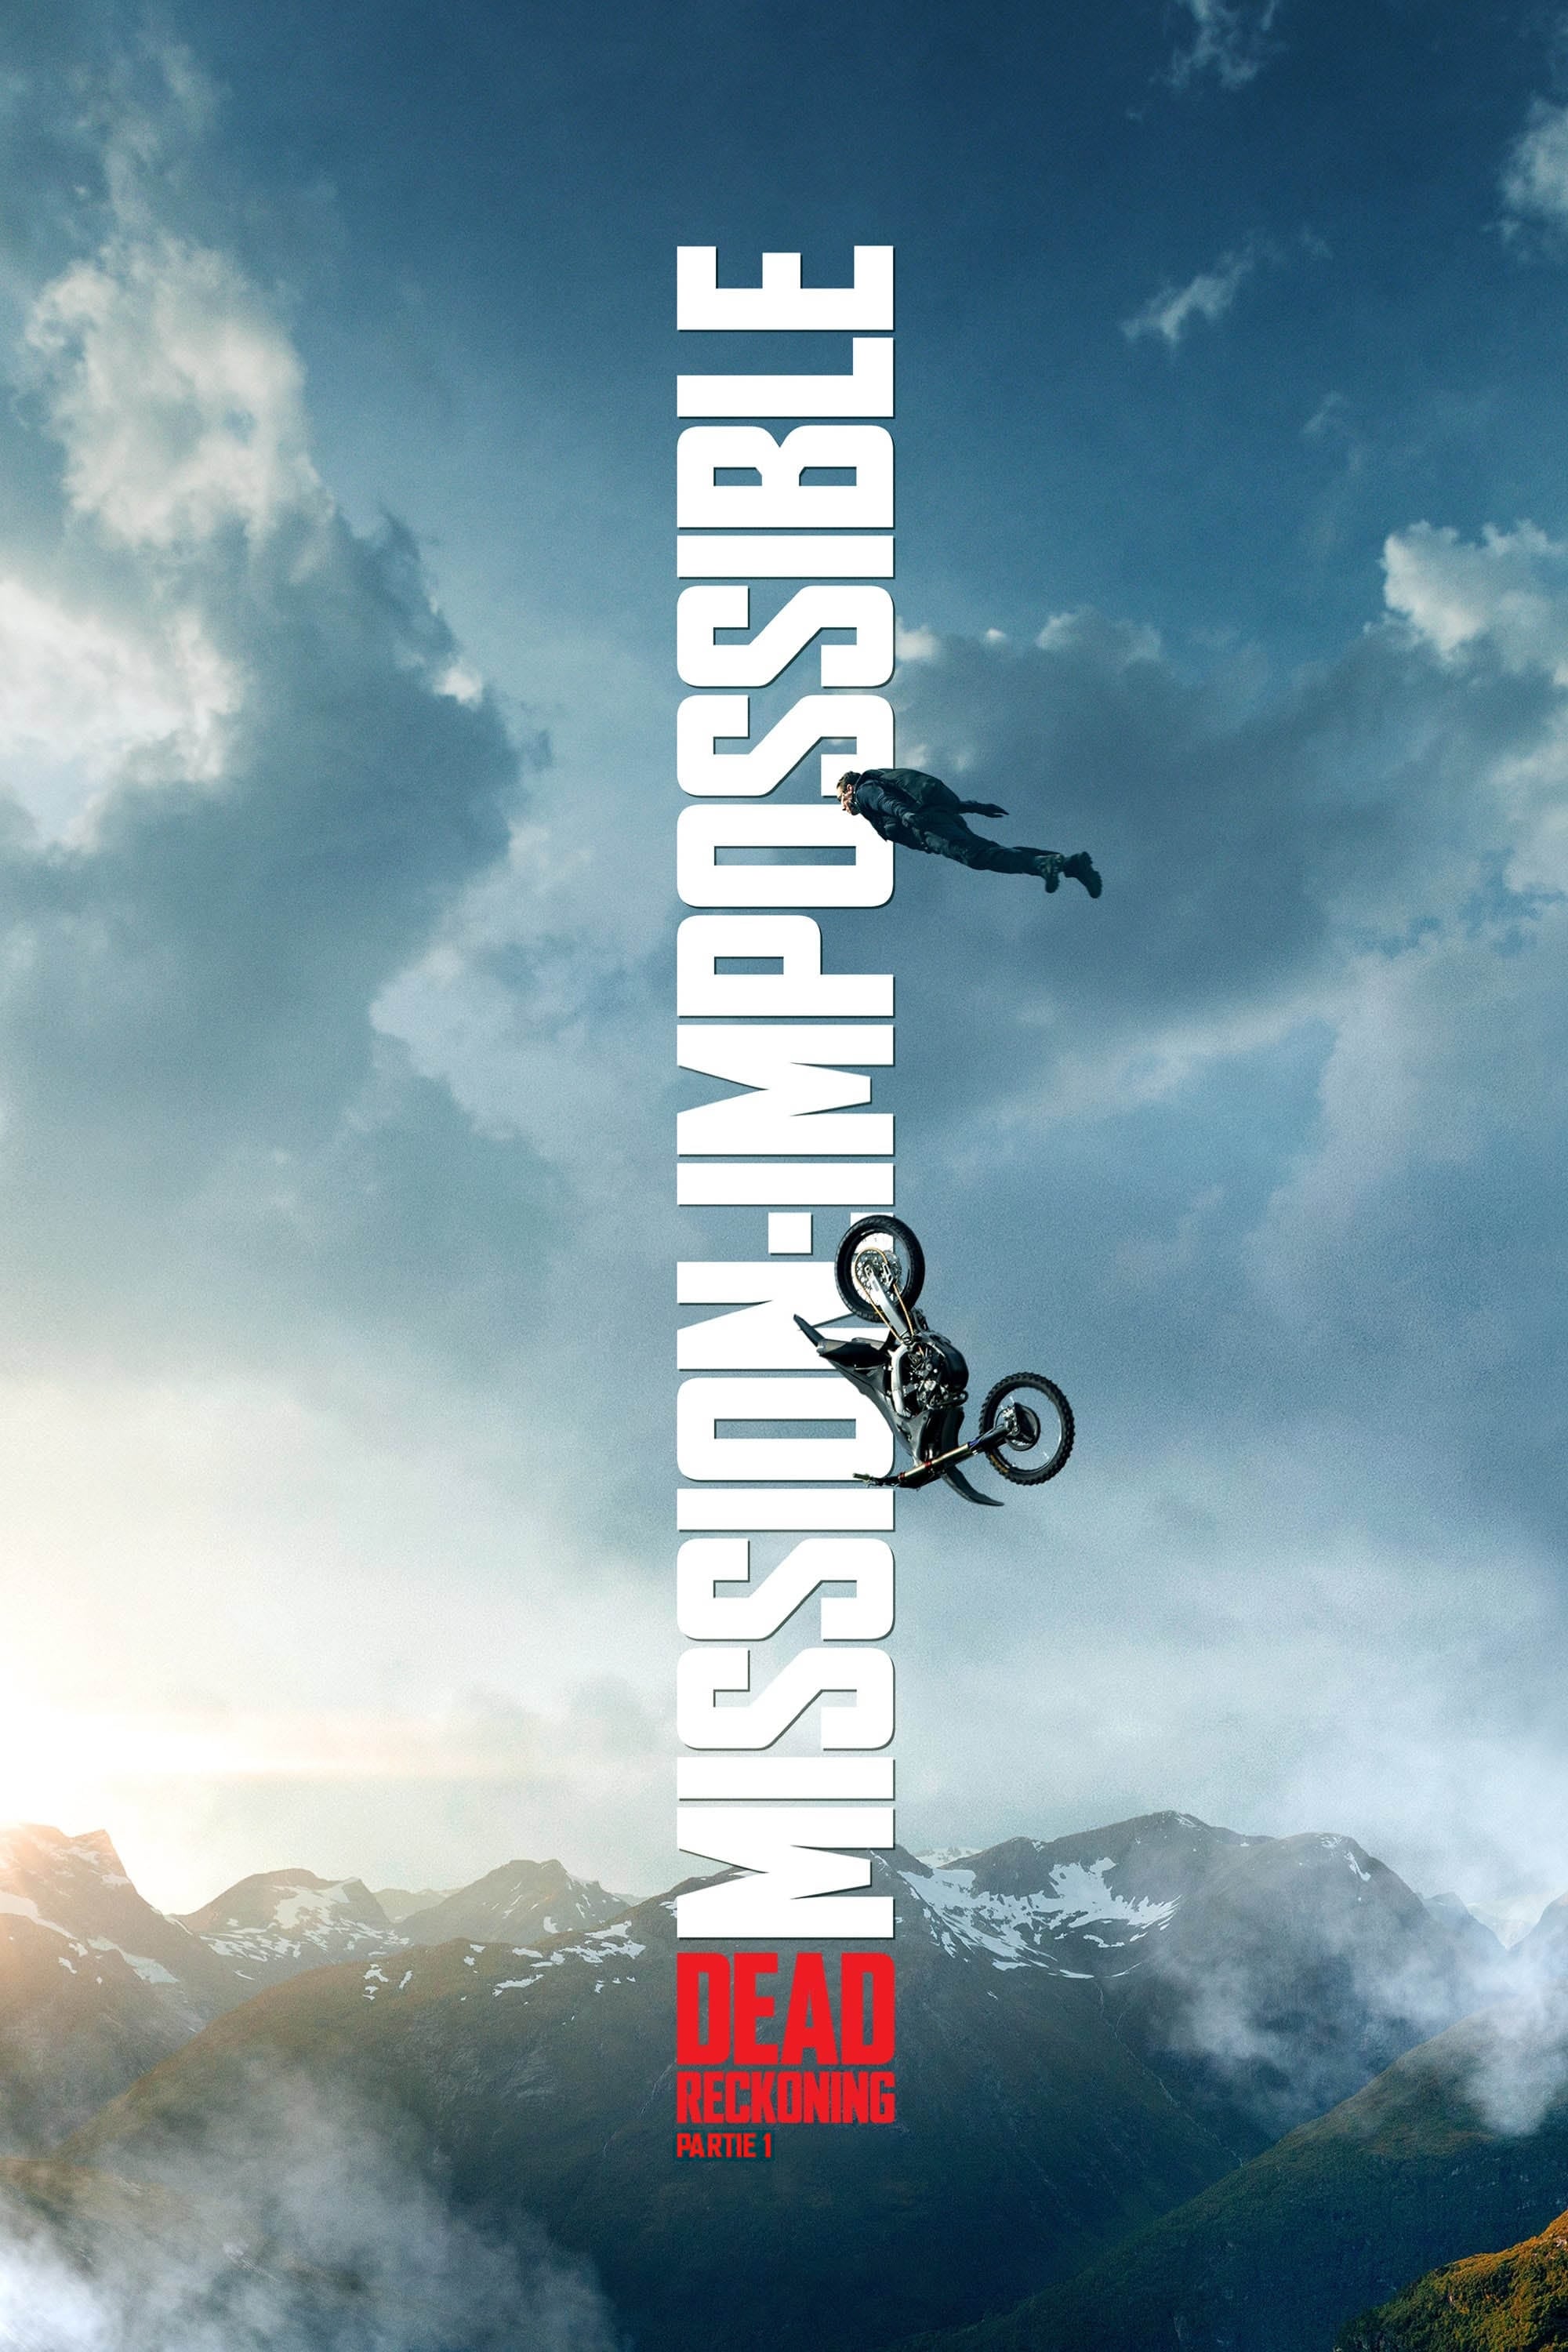 Affiche du film "Mission : Impossible - Dead Reckoning Partie 1"